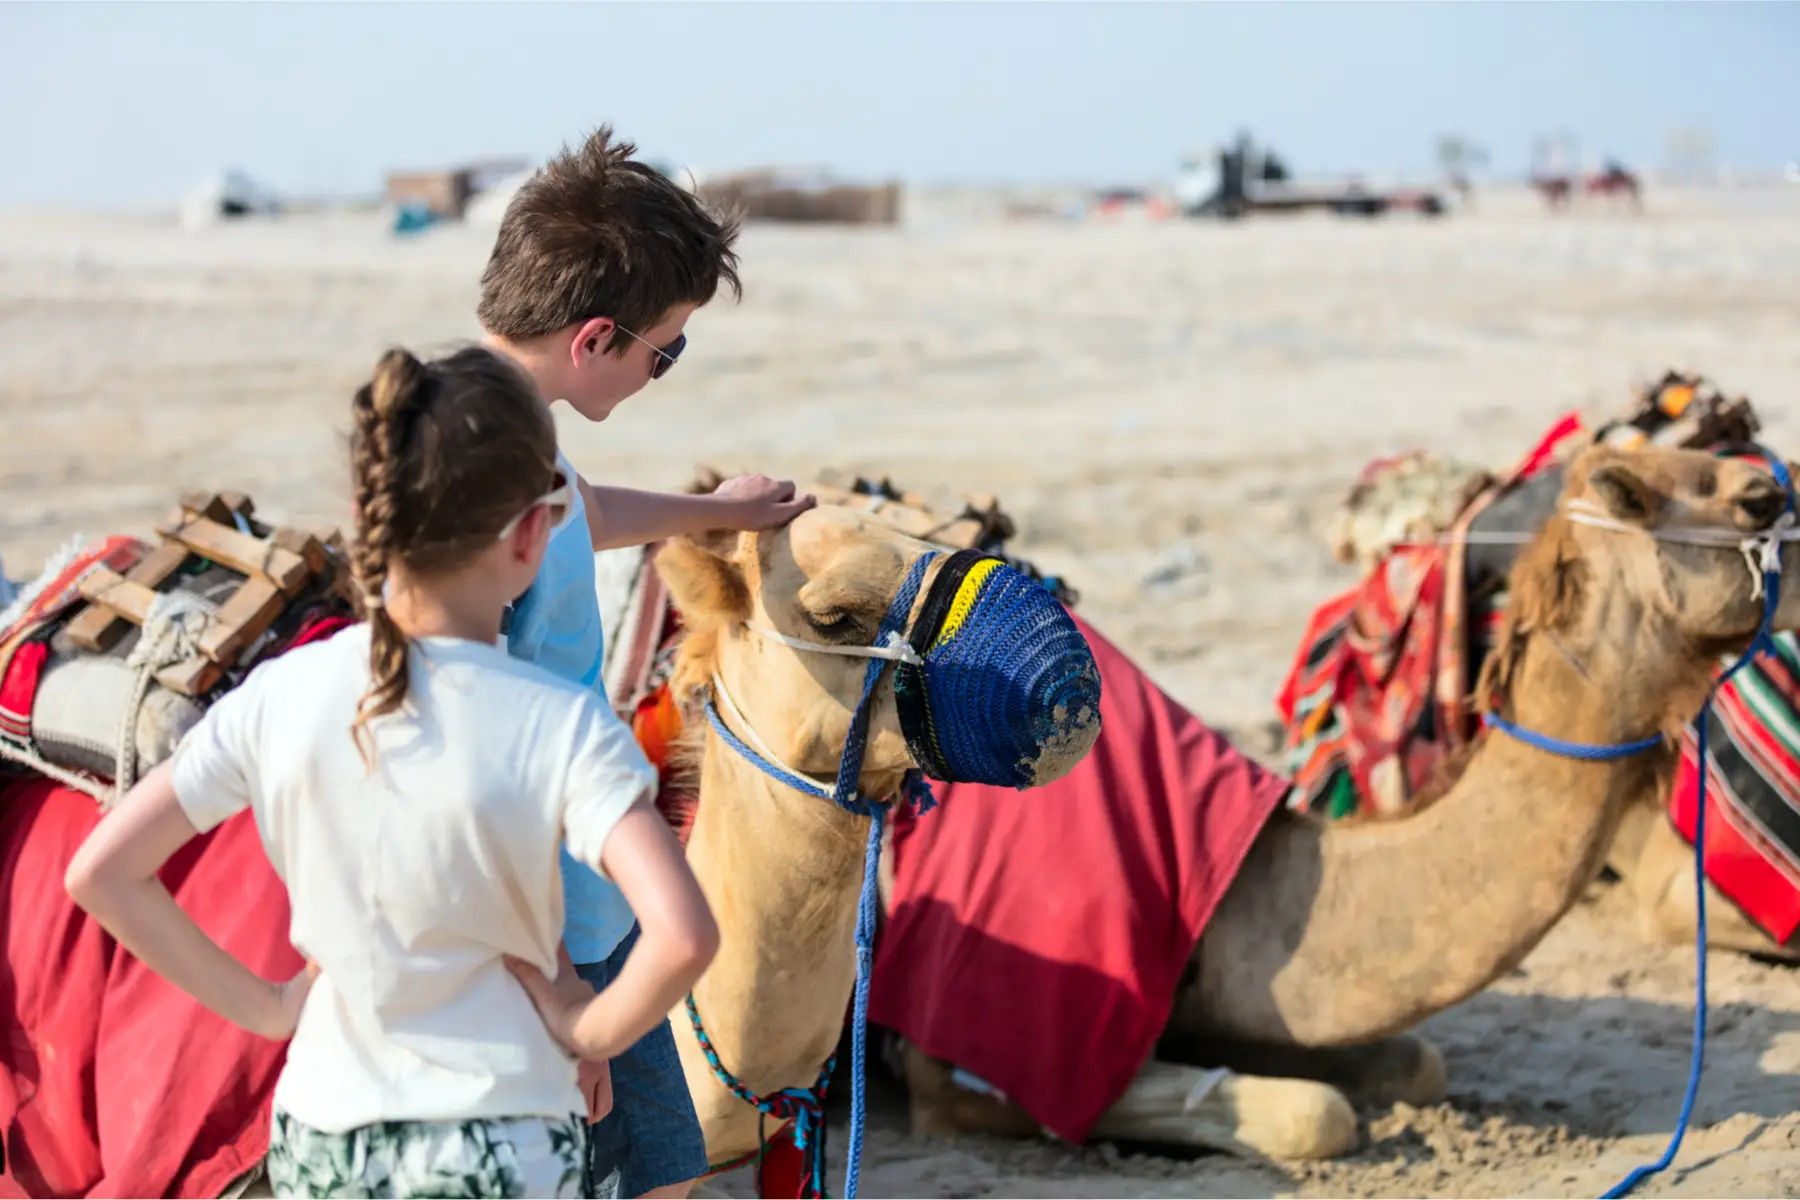 expat kids pet camels in Qatar